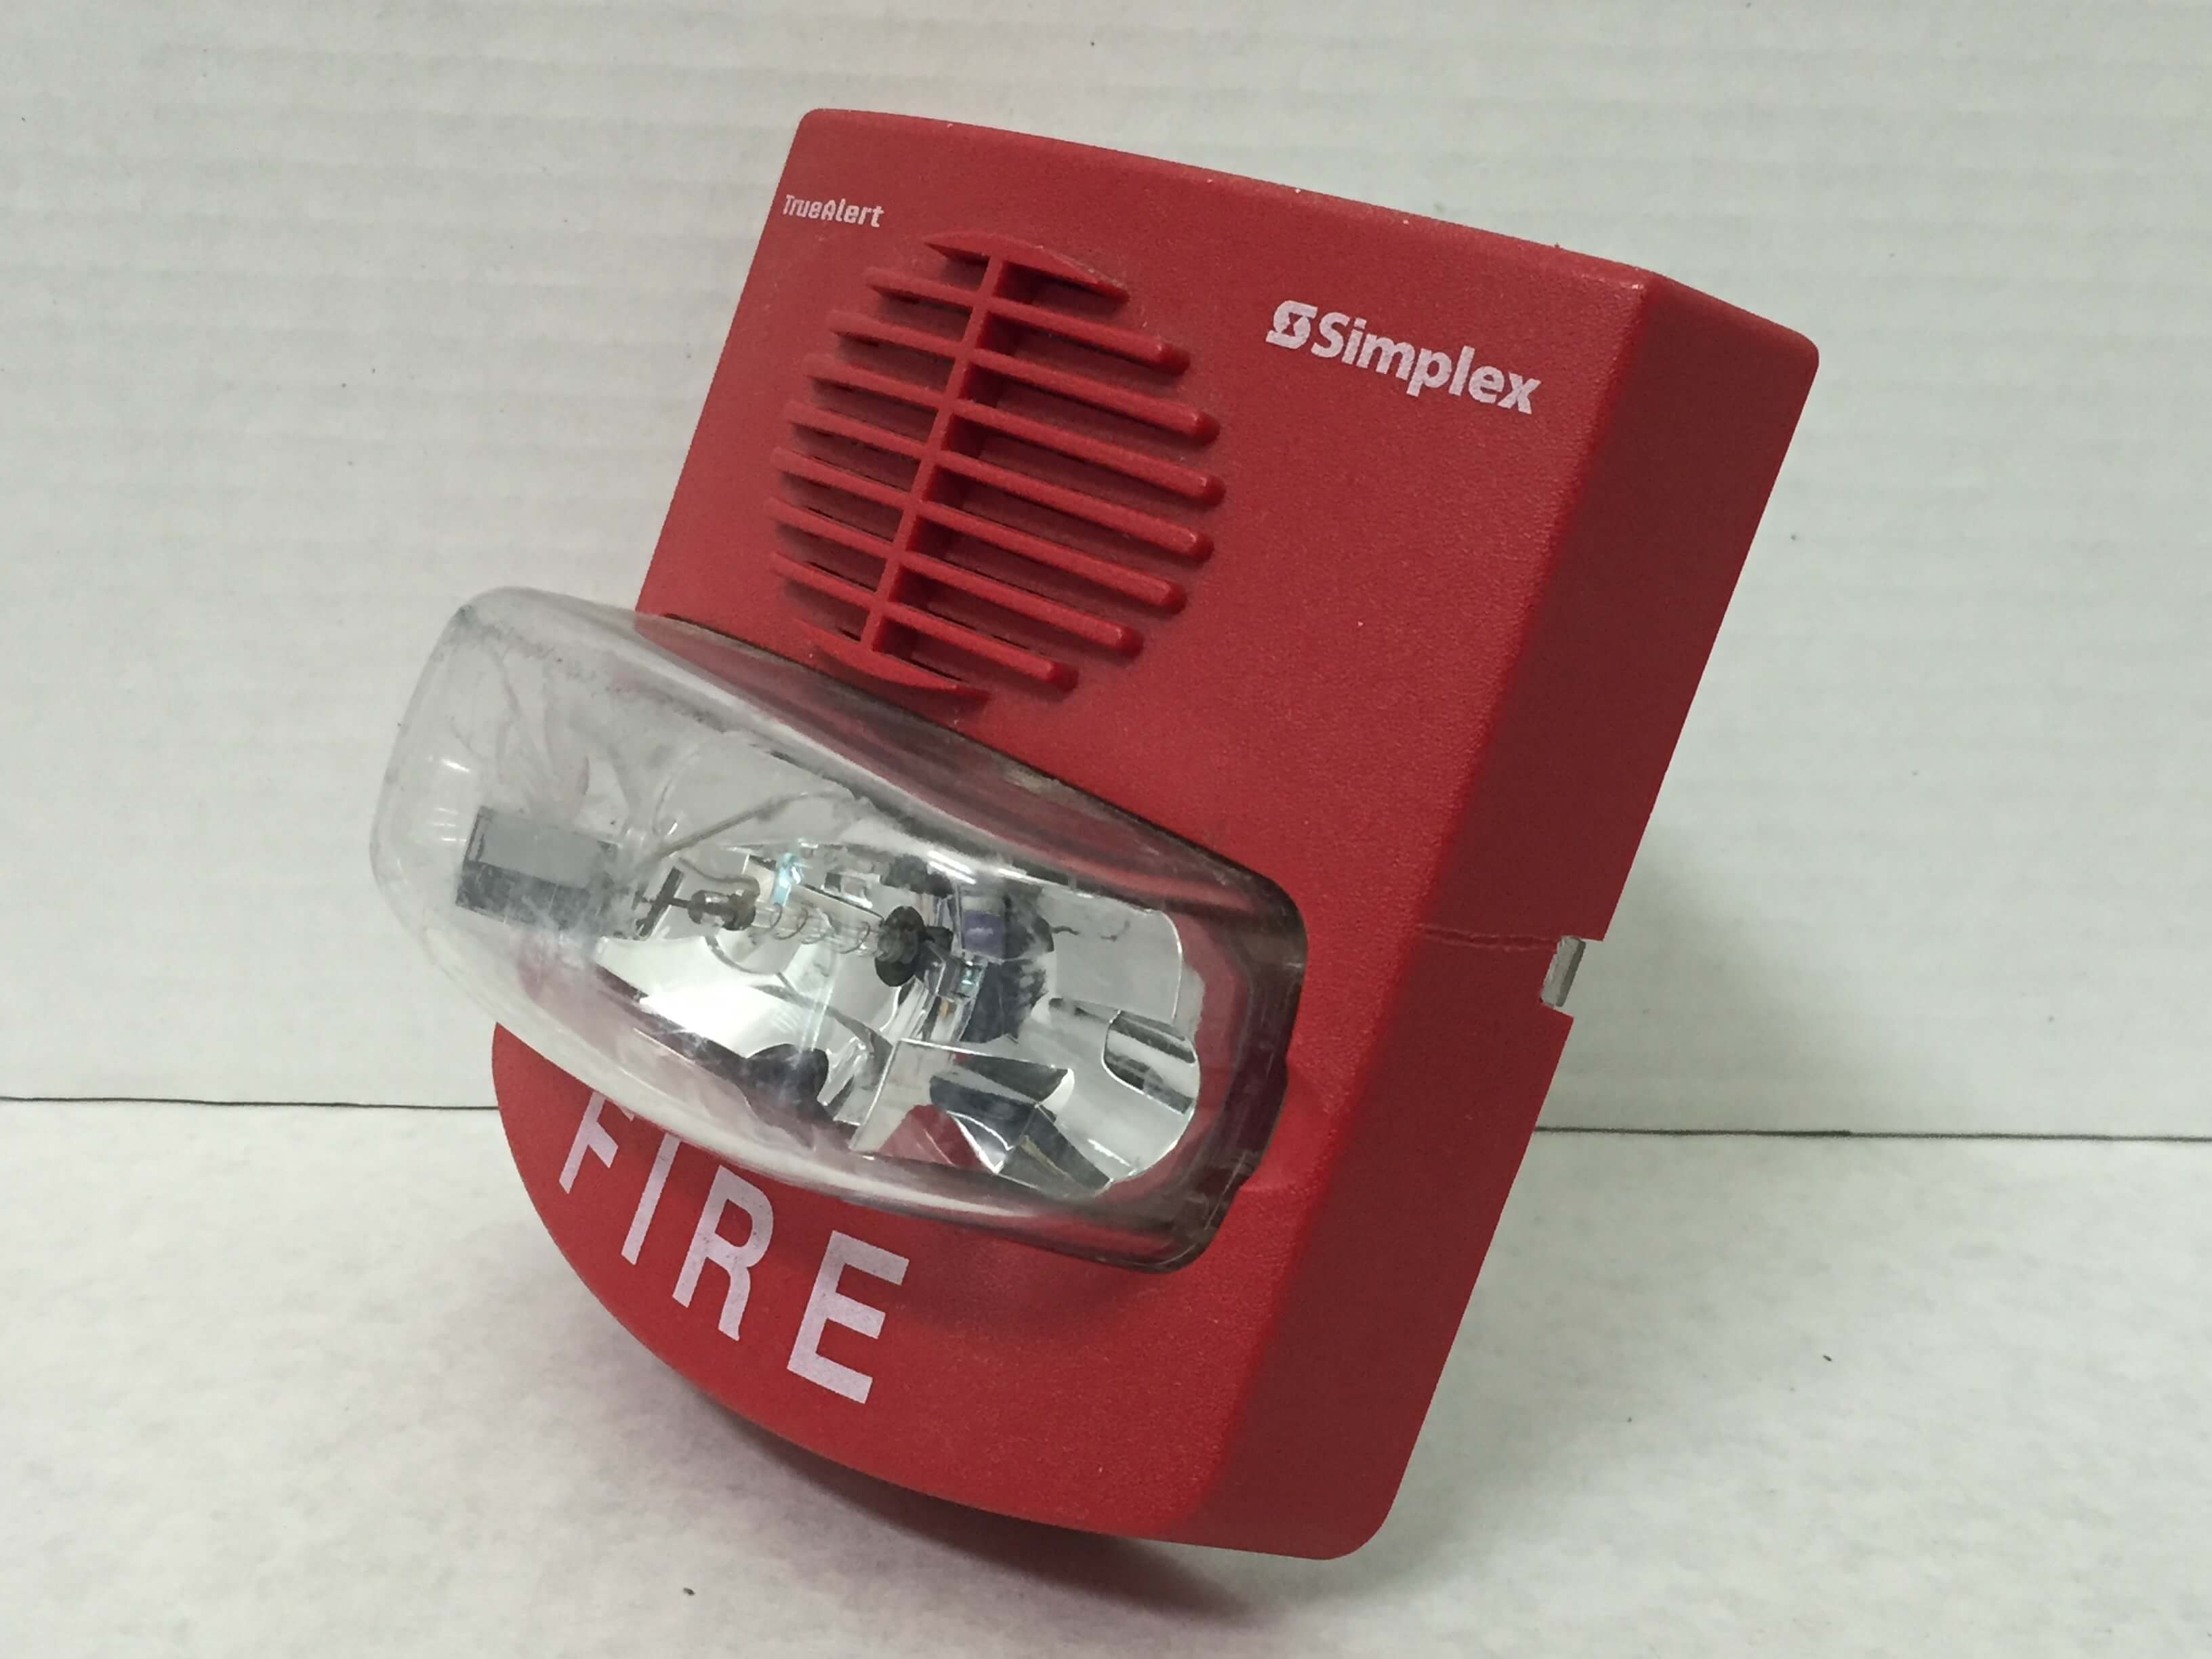 Simplex 4903-9417 - FireAlarms.tv - jjinc24/U8oL0's Fire Alarm ...